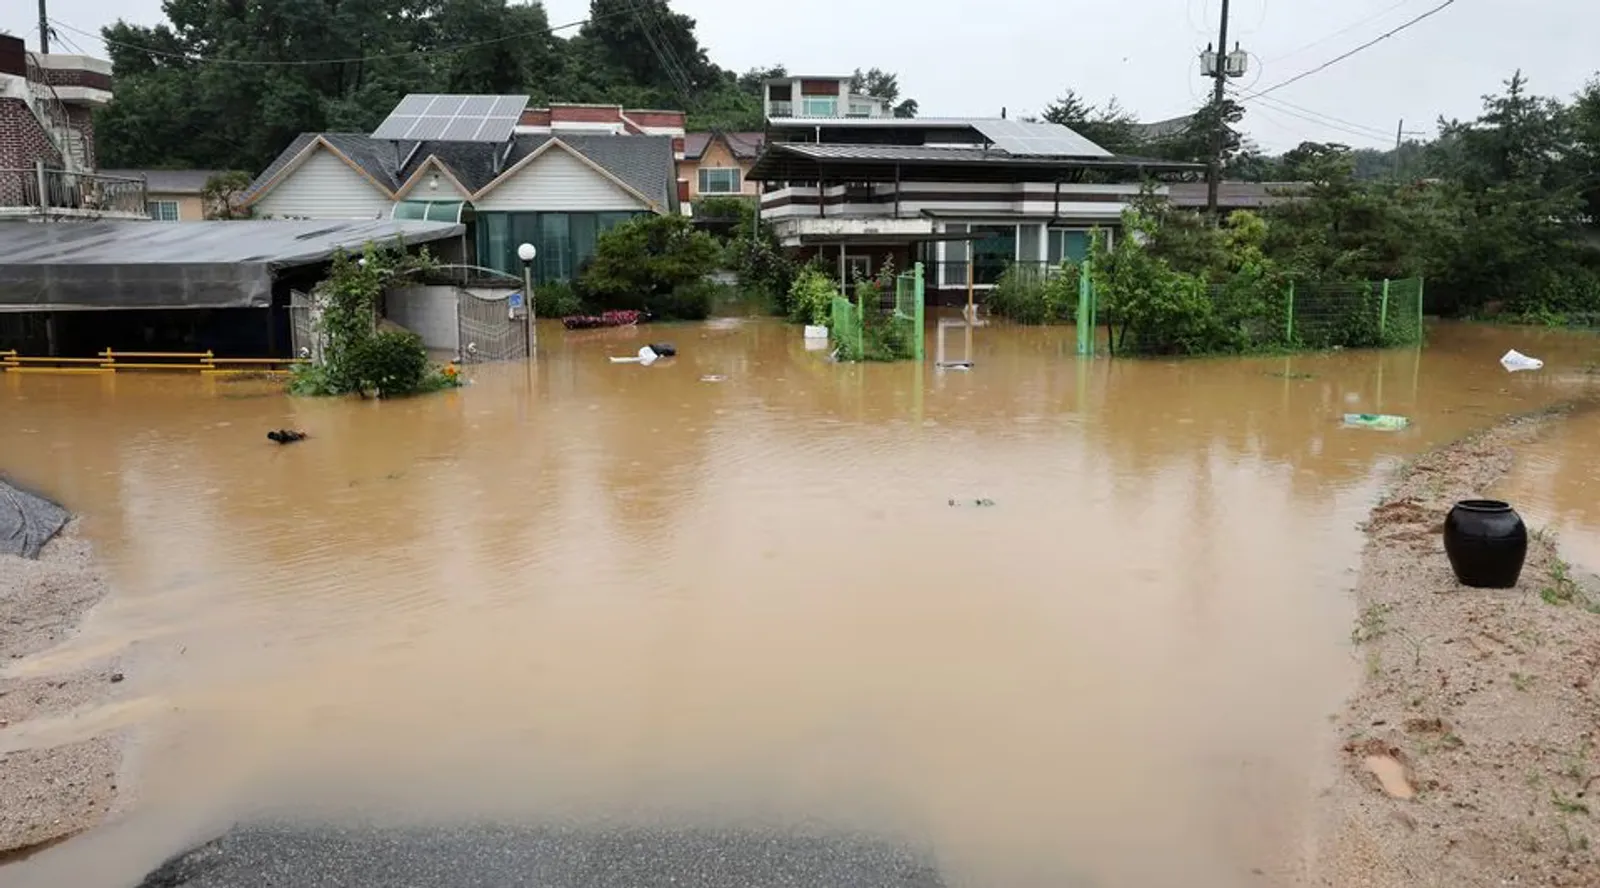 Kondisi Terkini Bencana Banjir Korea Selatan, Hingga Terjadi Longsor